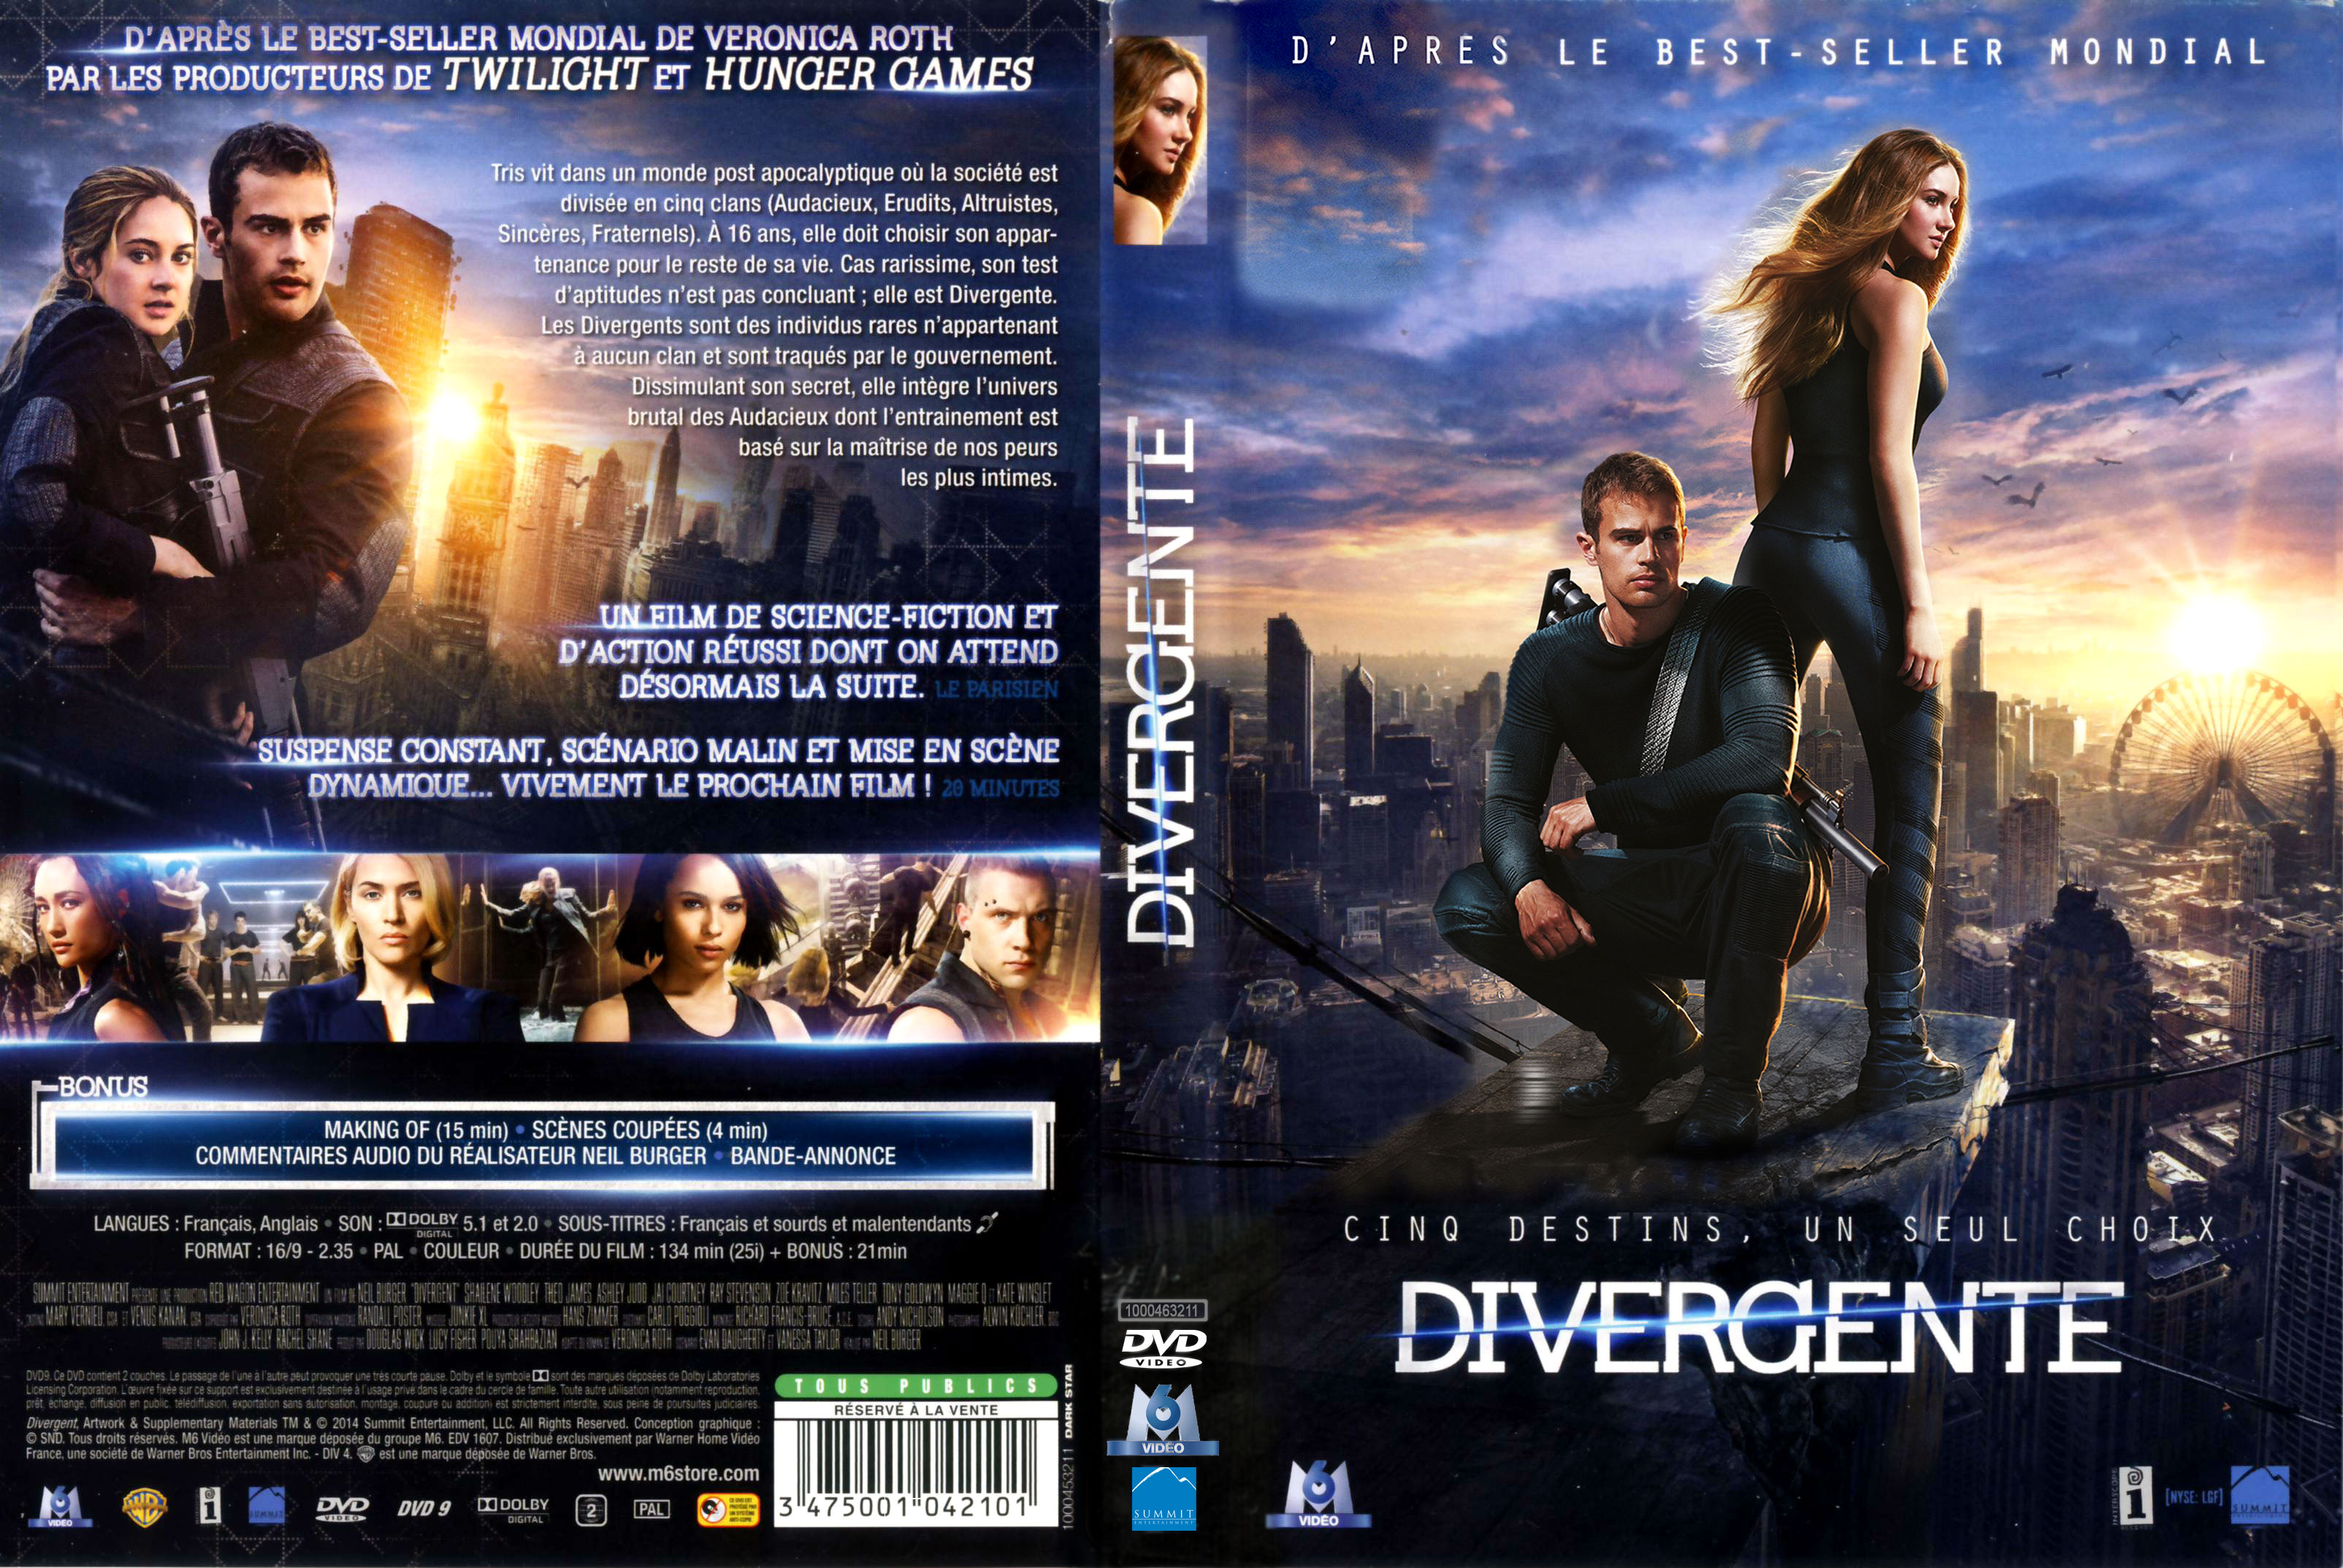 Jaquette DVD Divergente